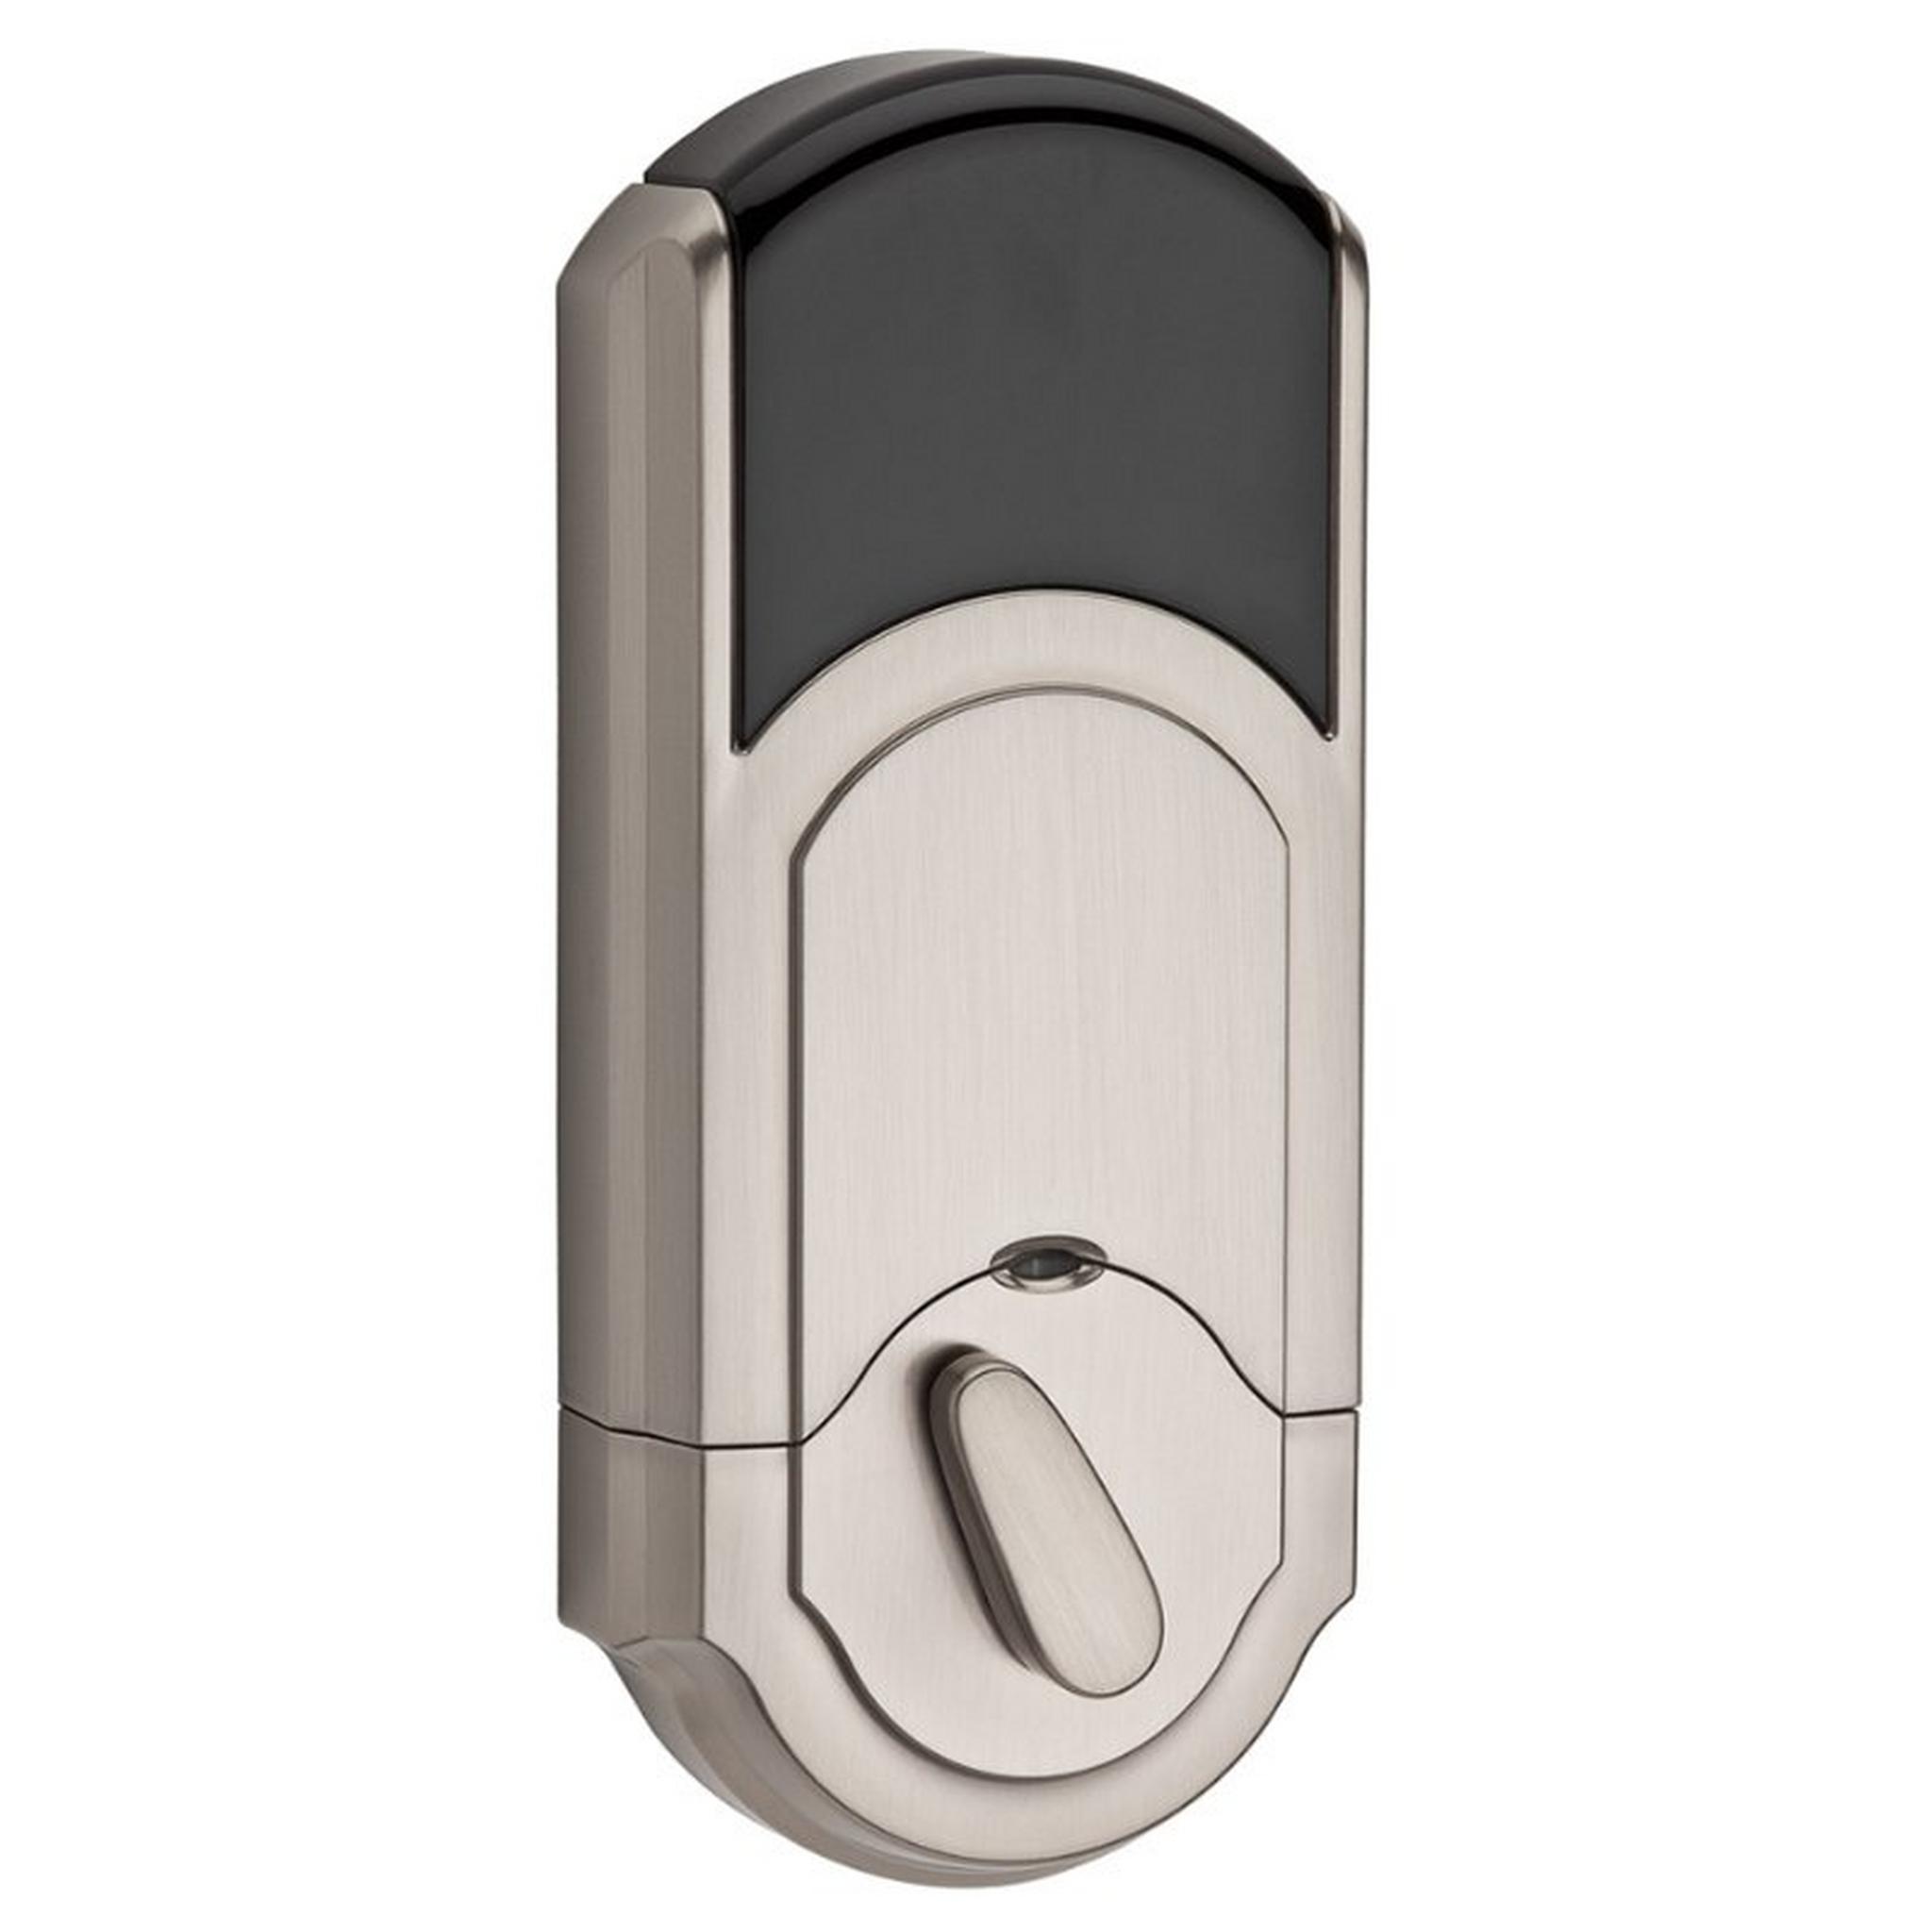 Kwikset Kevo 925 Smart Lock - Grey